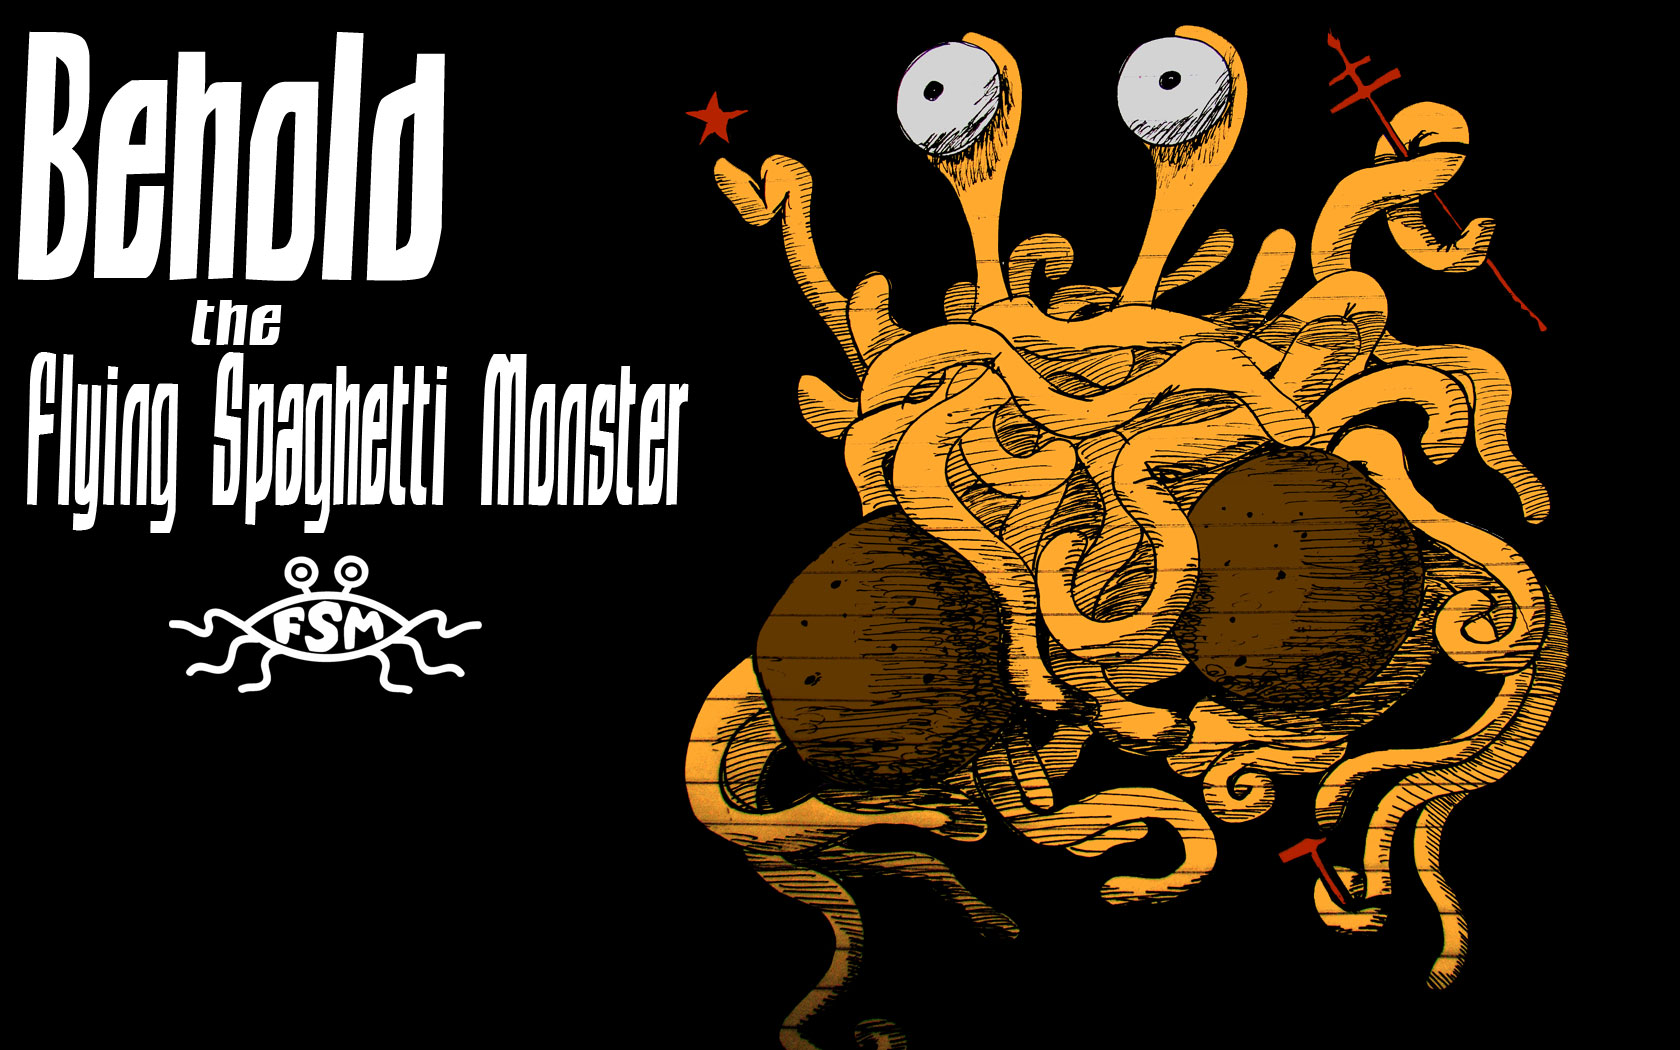 Religion Flying Spaghetti Monster Wallpaper